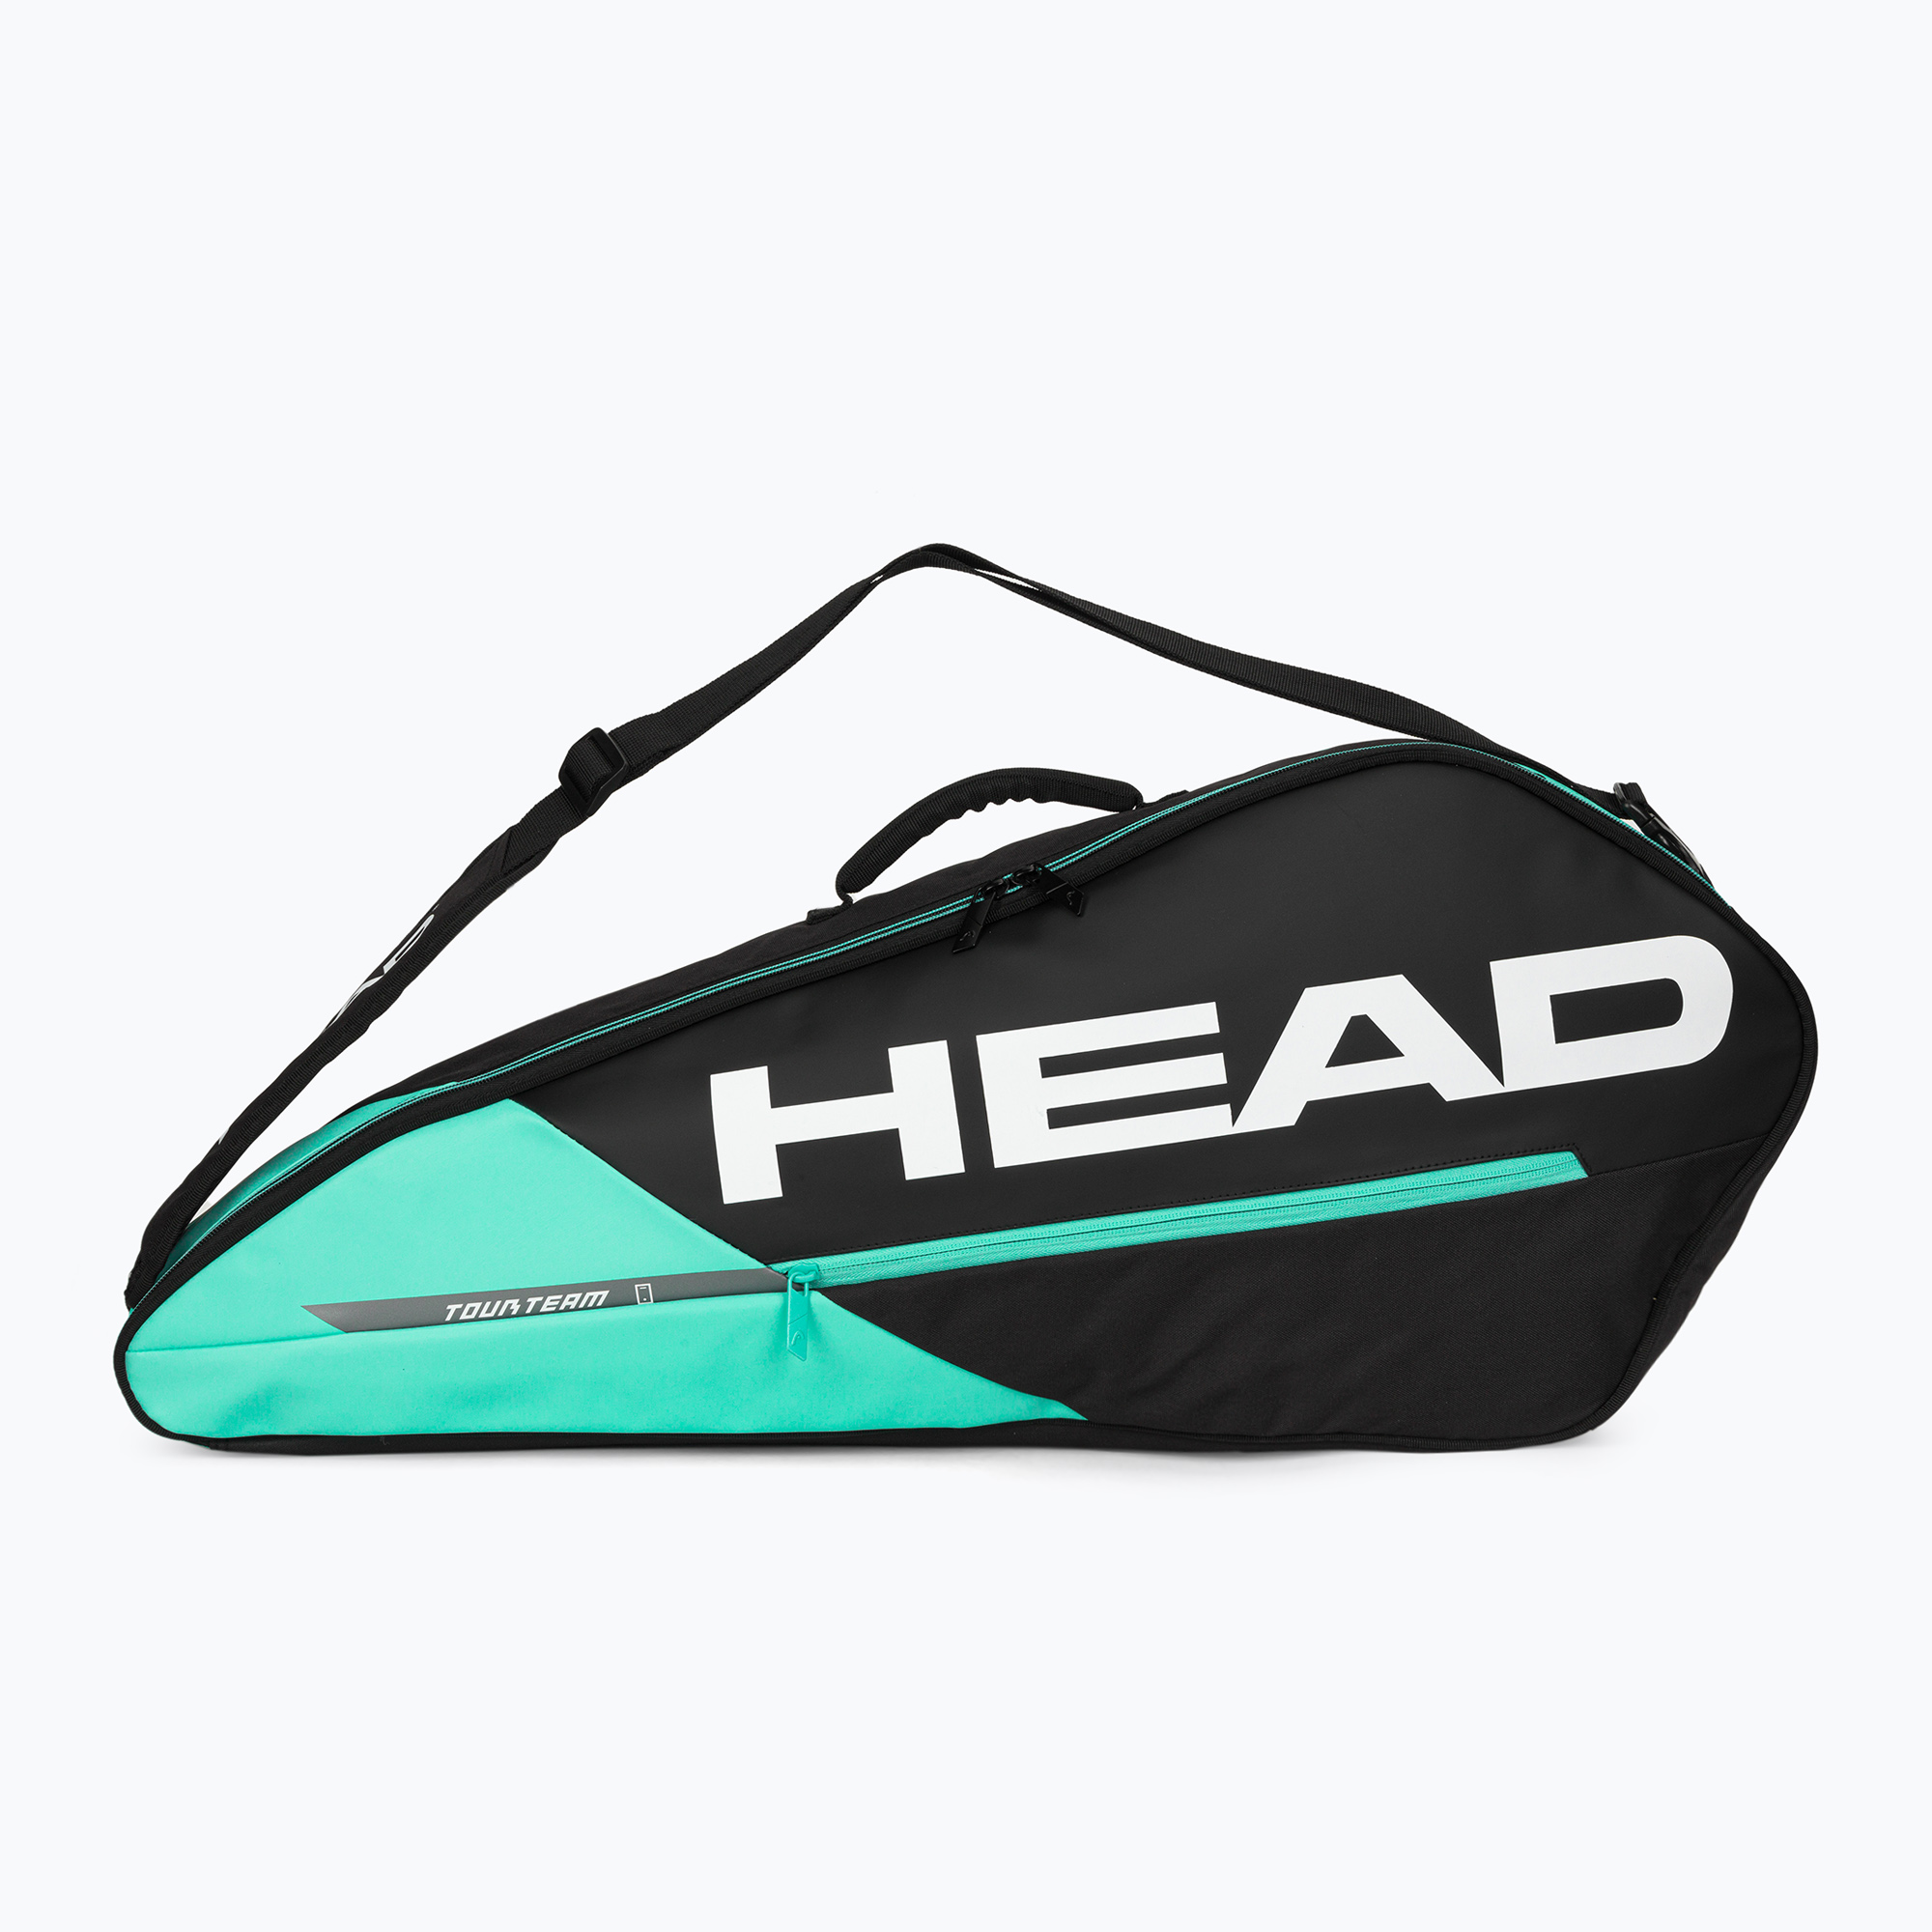 Geantă de tenis HEAD Tour Team 3R 30 l negru/albastru 283502